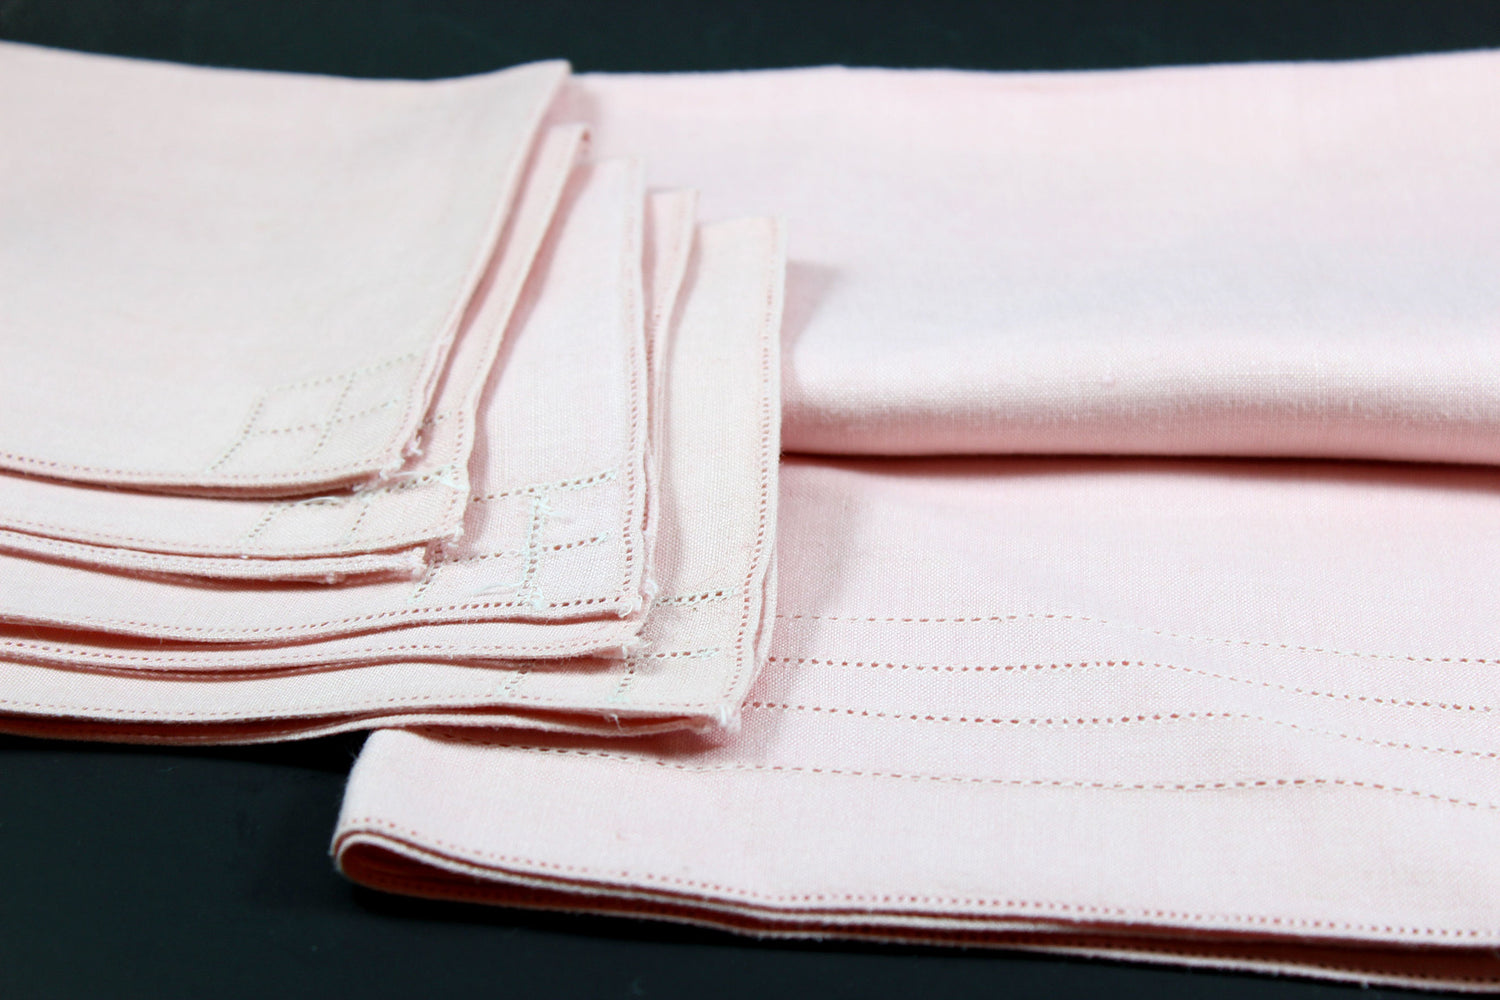 Irish Linen, Pink Bridge Set with Tea Towels